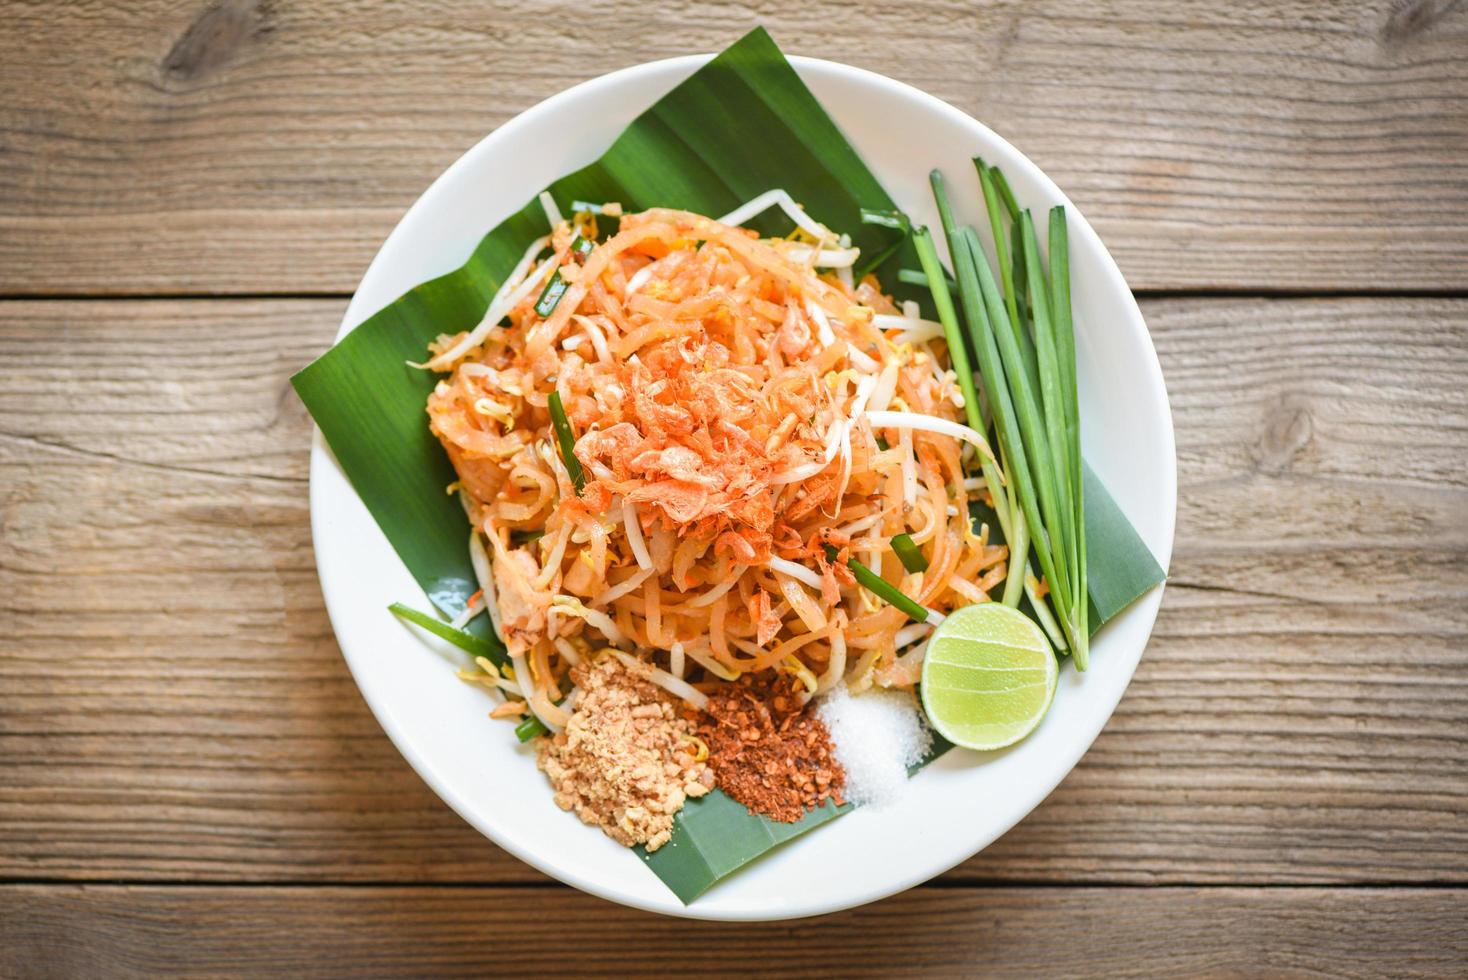 comida tailandesa fideos fritos estilo tailandés con gambas brotes de soja y guarnición de cacahuetes chile en polvo azúcar lima limón, fideos salteados tailandés en un plato servido en la mesa del comedor comida - vista superior foto